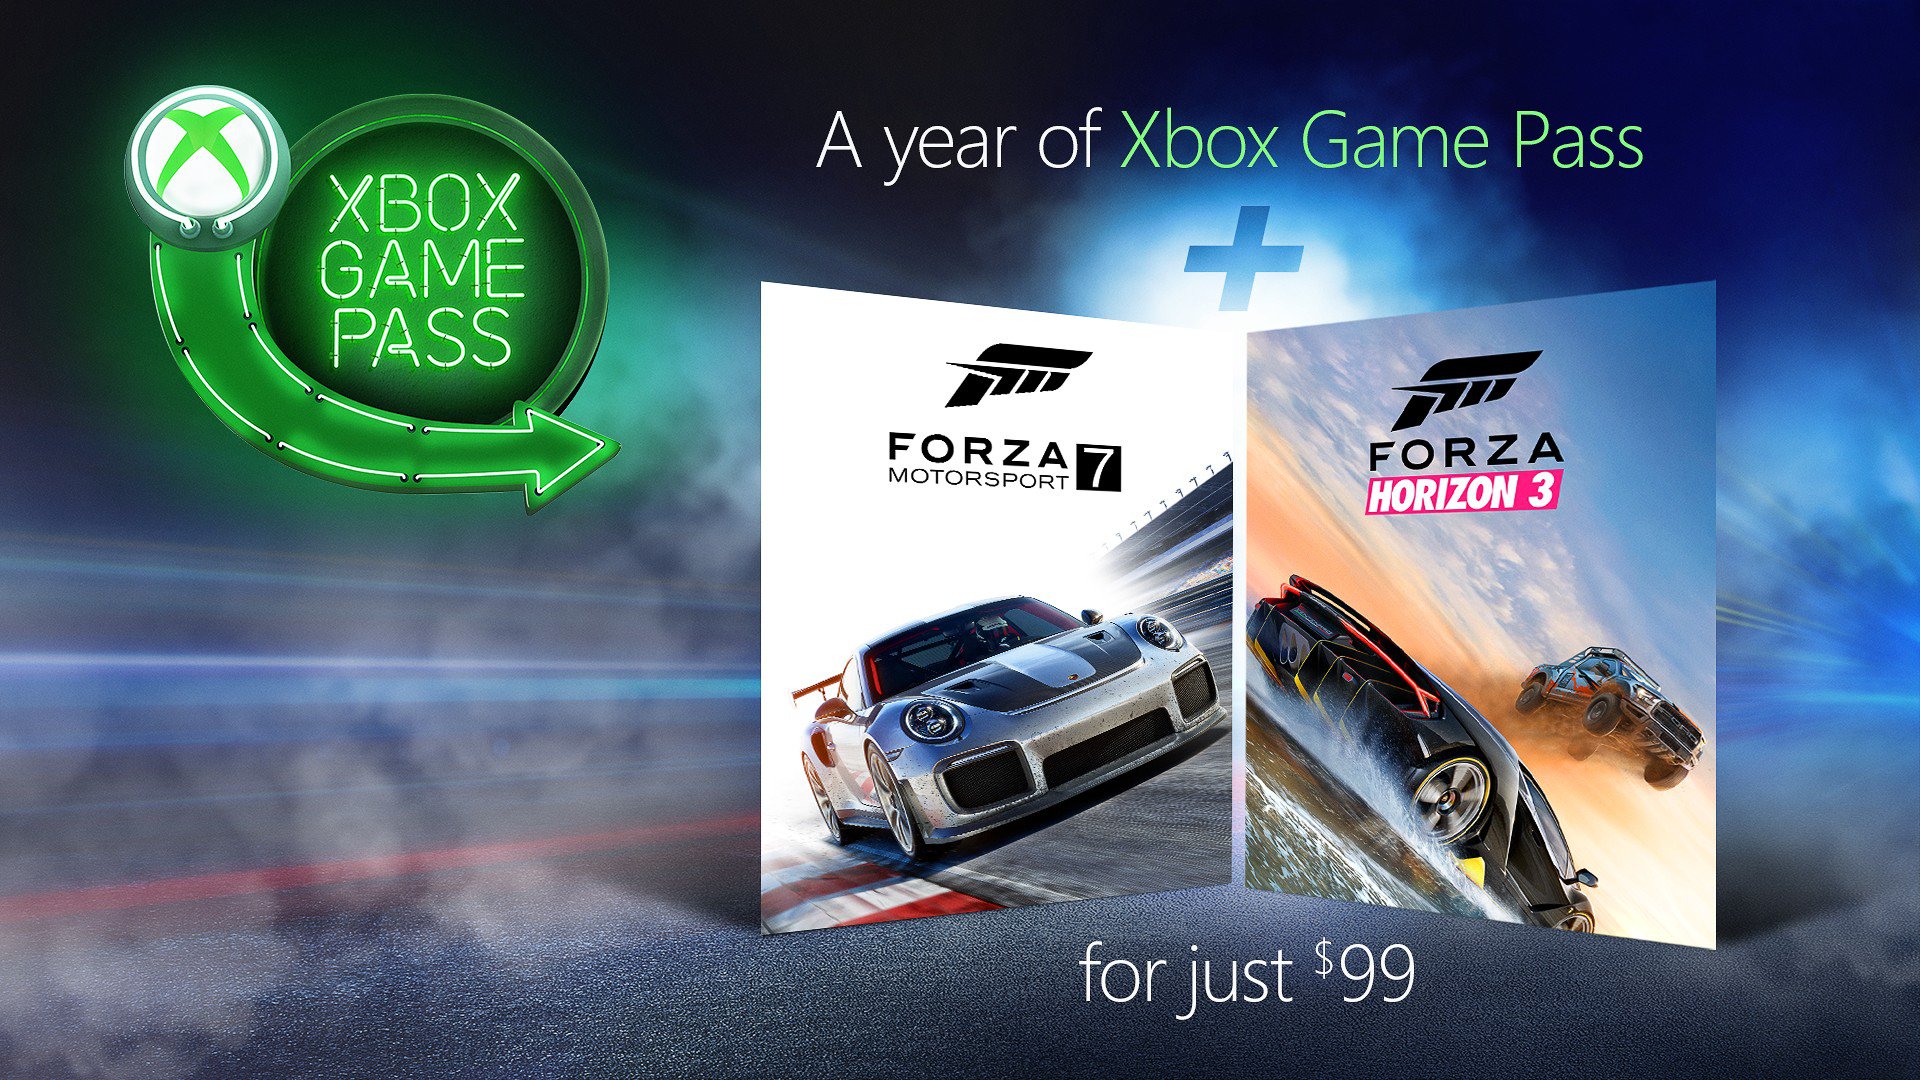 Xbox Game Pass Trial 1 měsíc 2